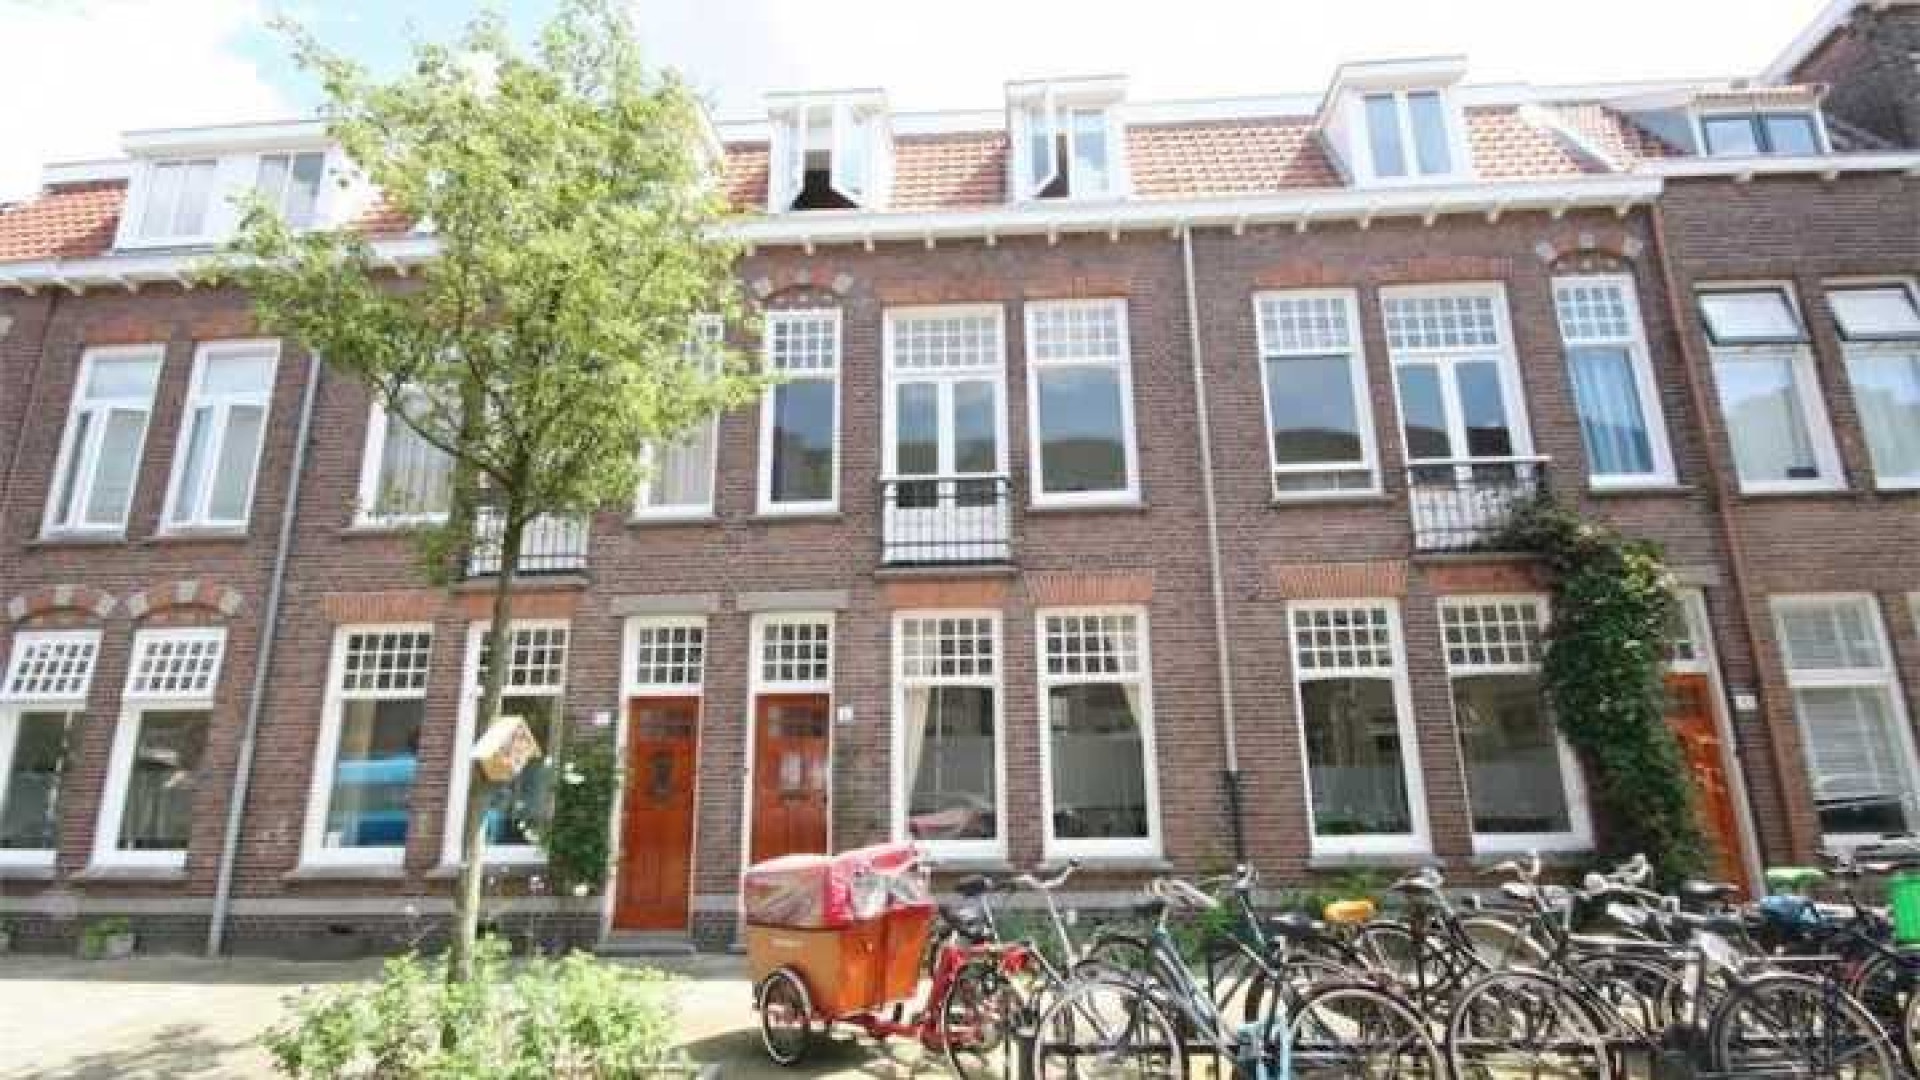 Divorce acteur Fedja van Huet koopt herenhuis in Utrecht. Zie foto's